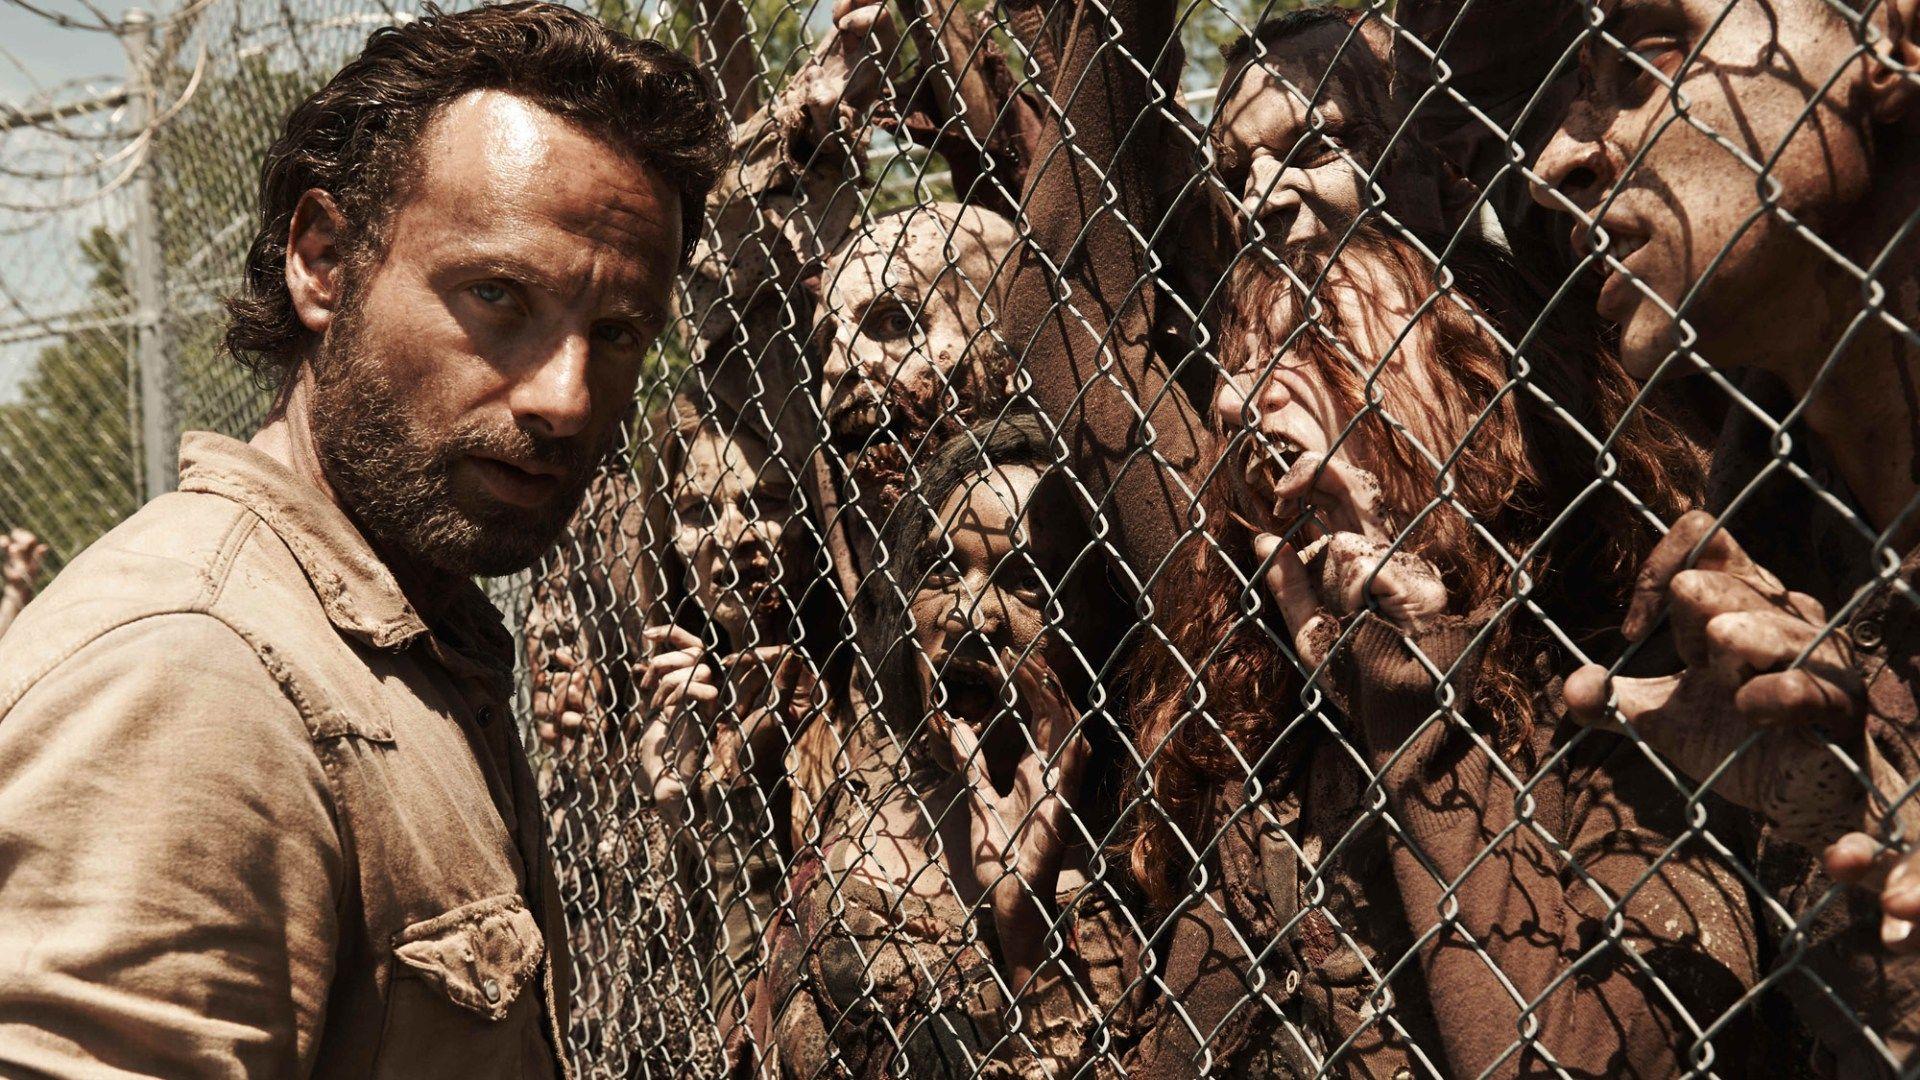 Horror, Rick Grimes, The Walking Dead, The Walking Dead TV Series